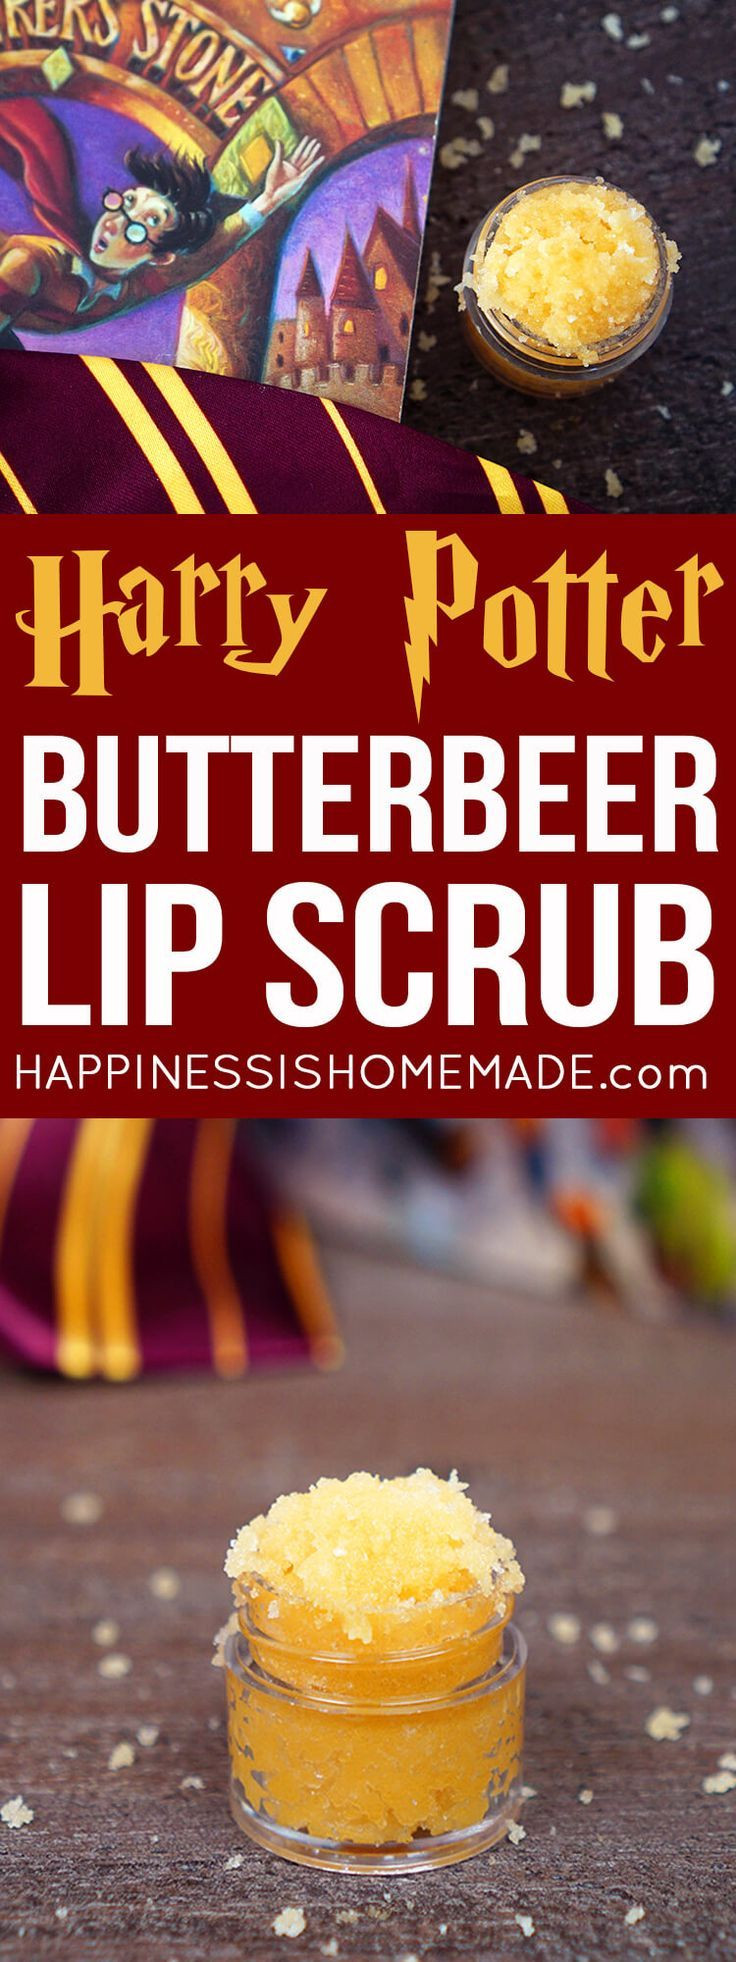 Geschenke Für Harry Potter Fans
 232 besten Geschenke für Harry Potter Fans Bilder auf